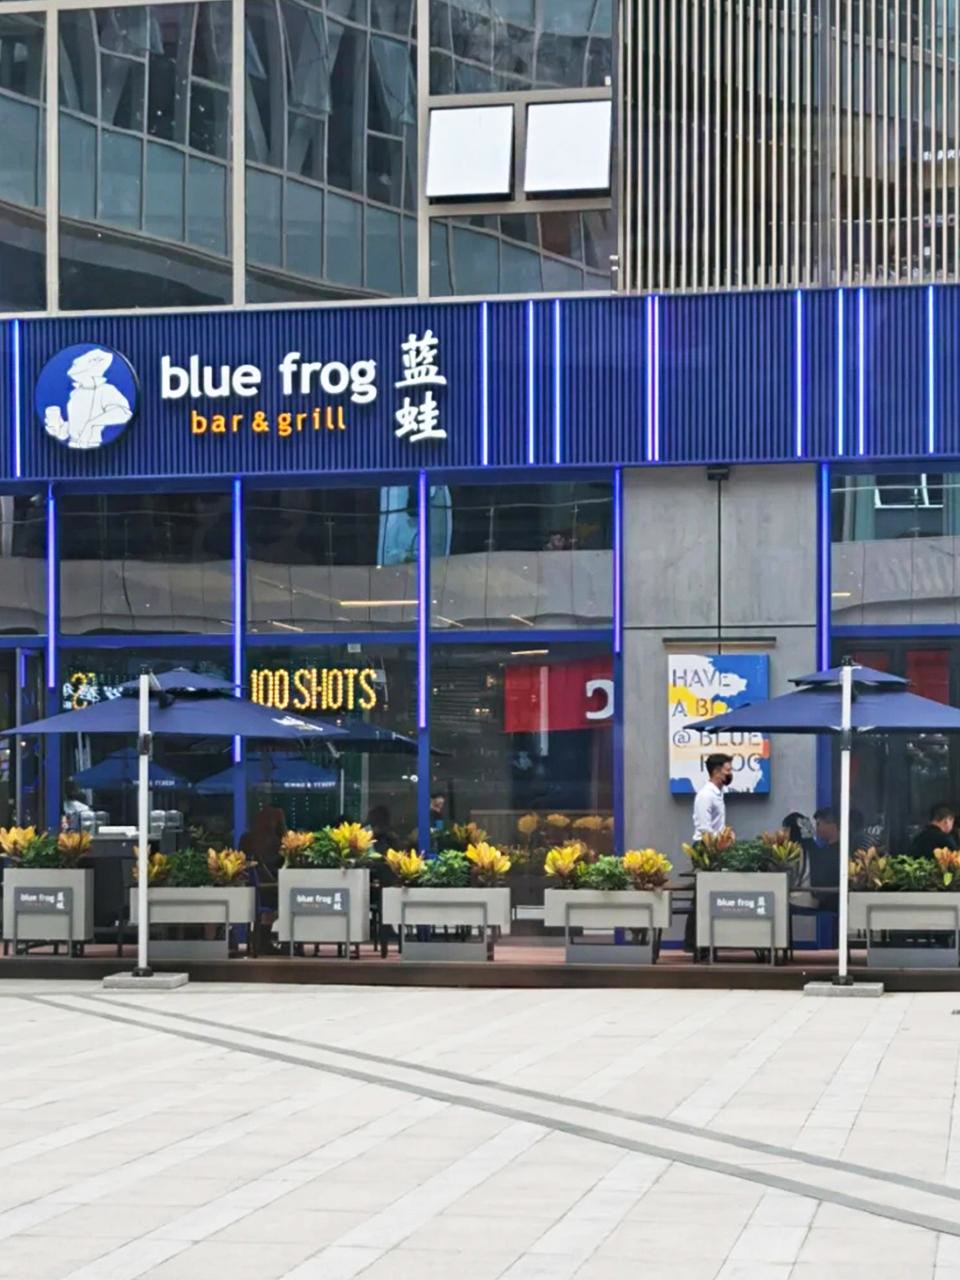 郑州蓝蛙西餐厅图片